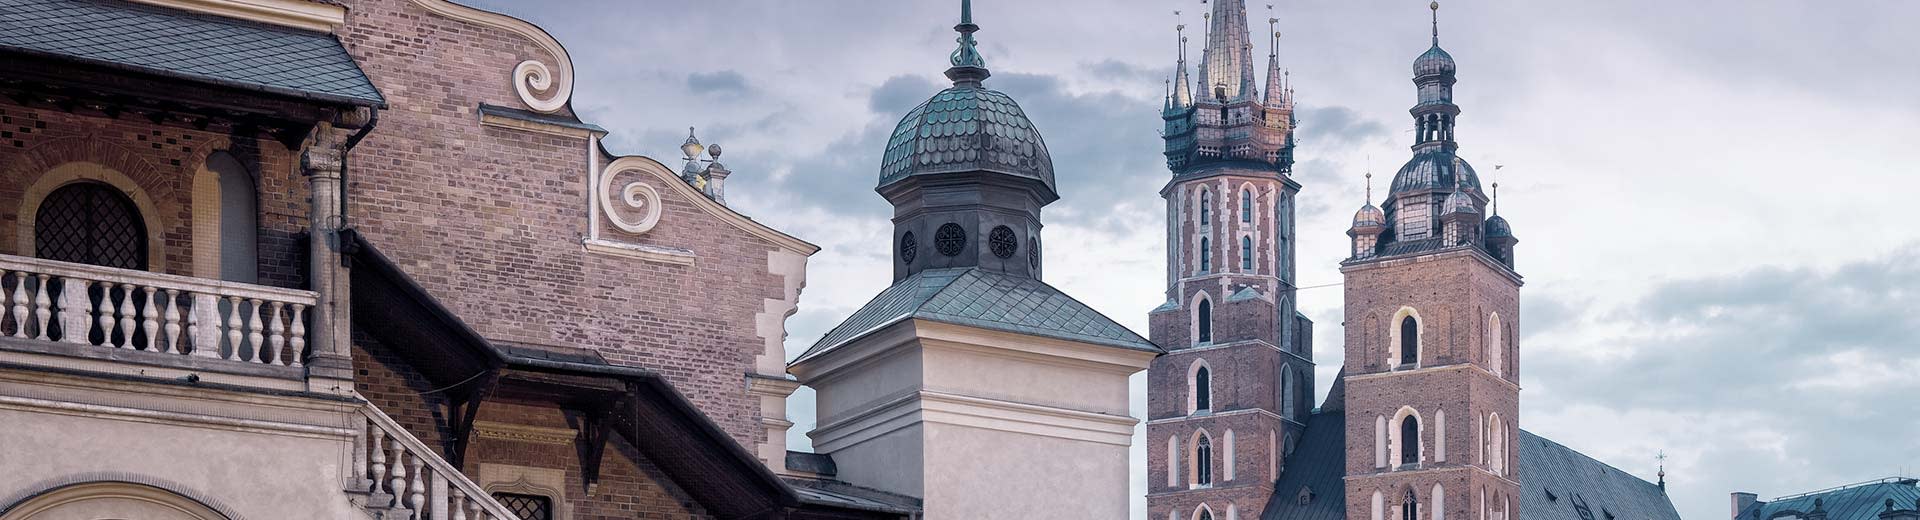 De belles églises polonaises se déroulent contre un ciel nuageux à Cracovie.